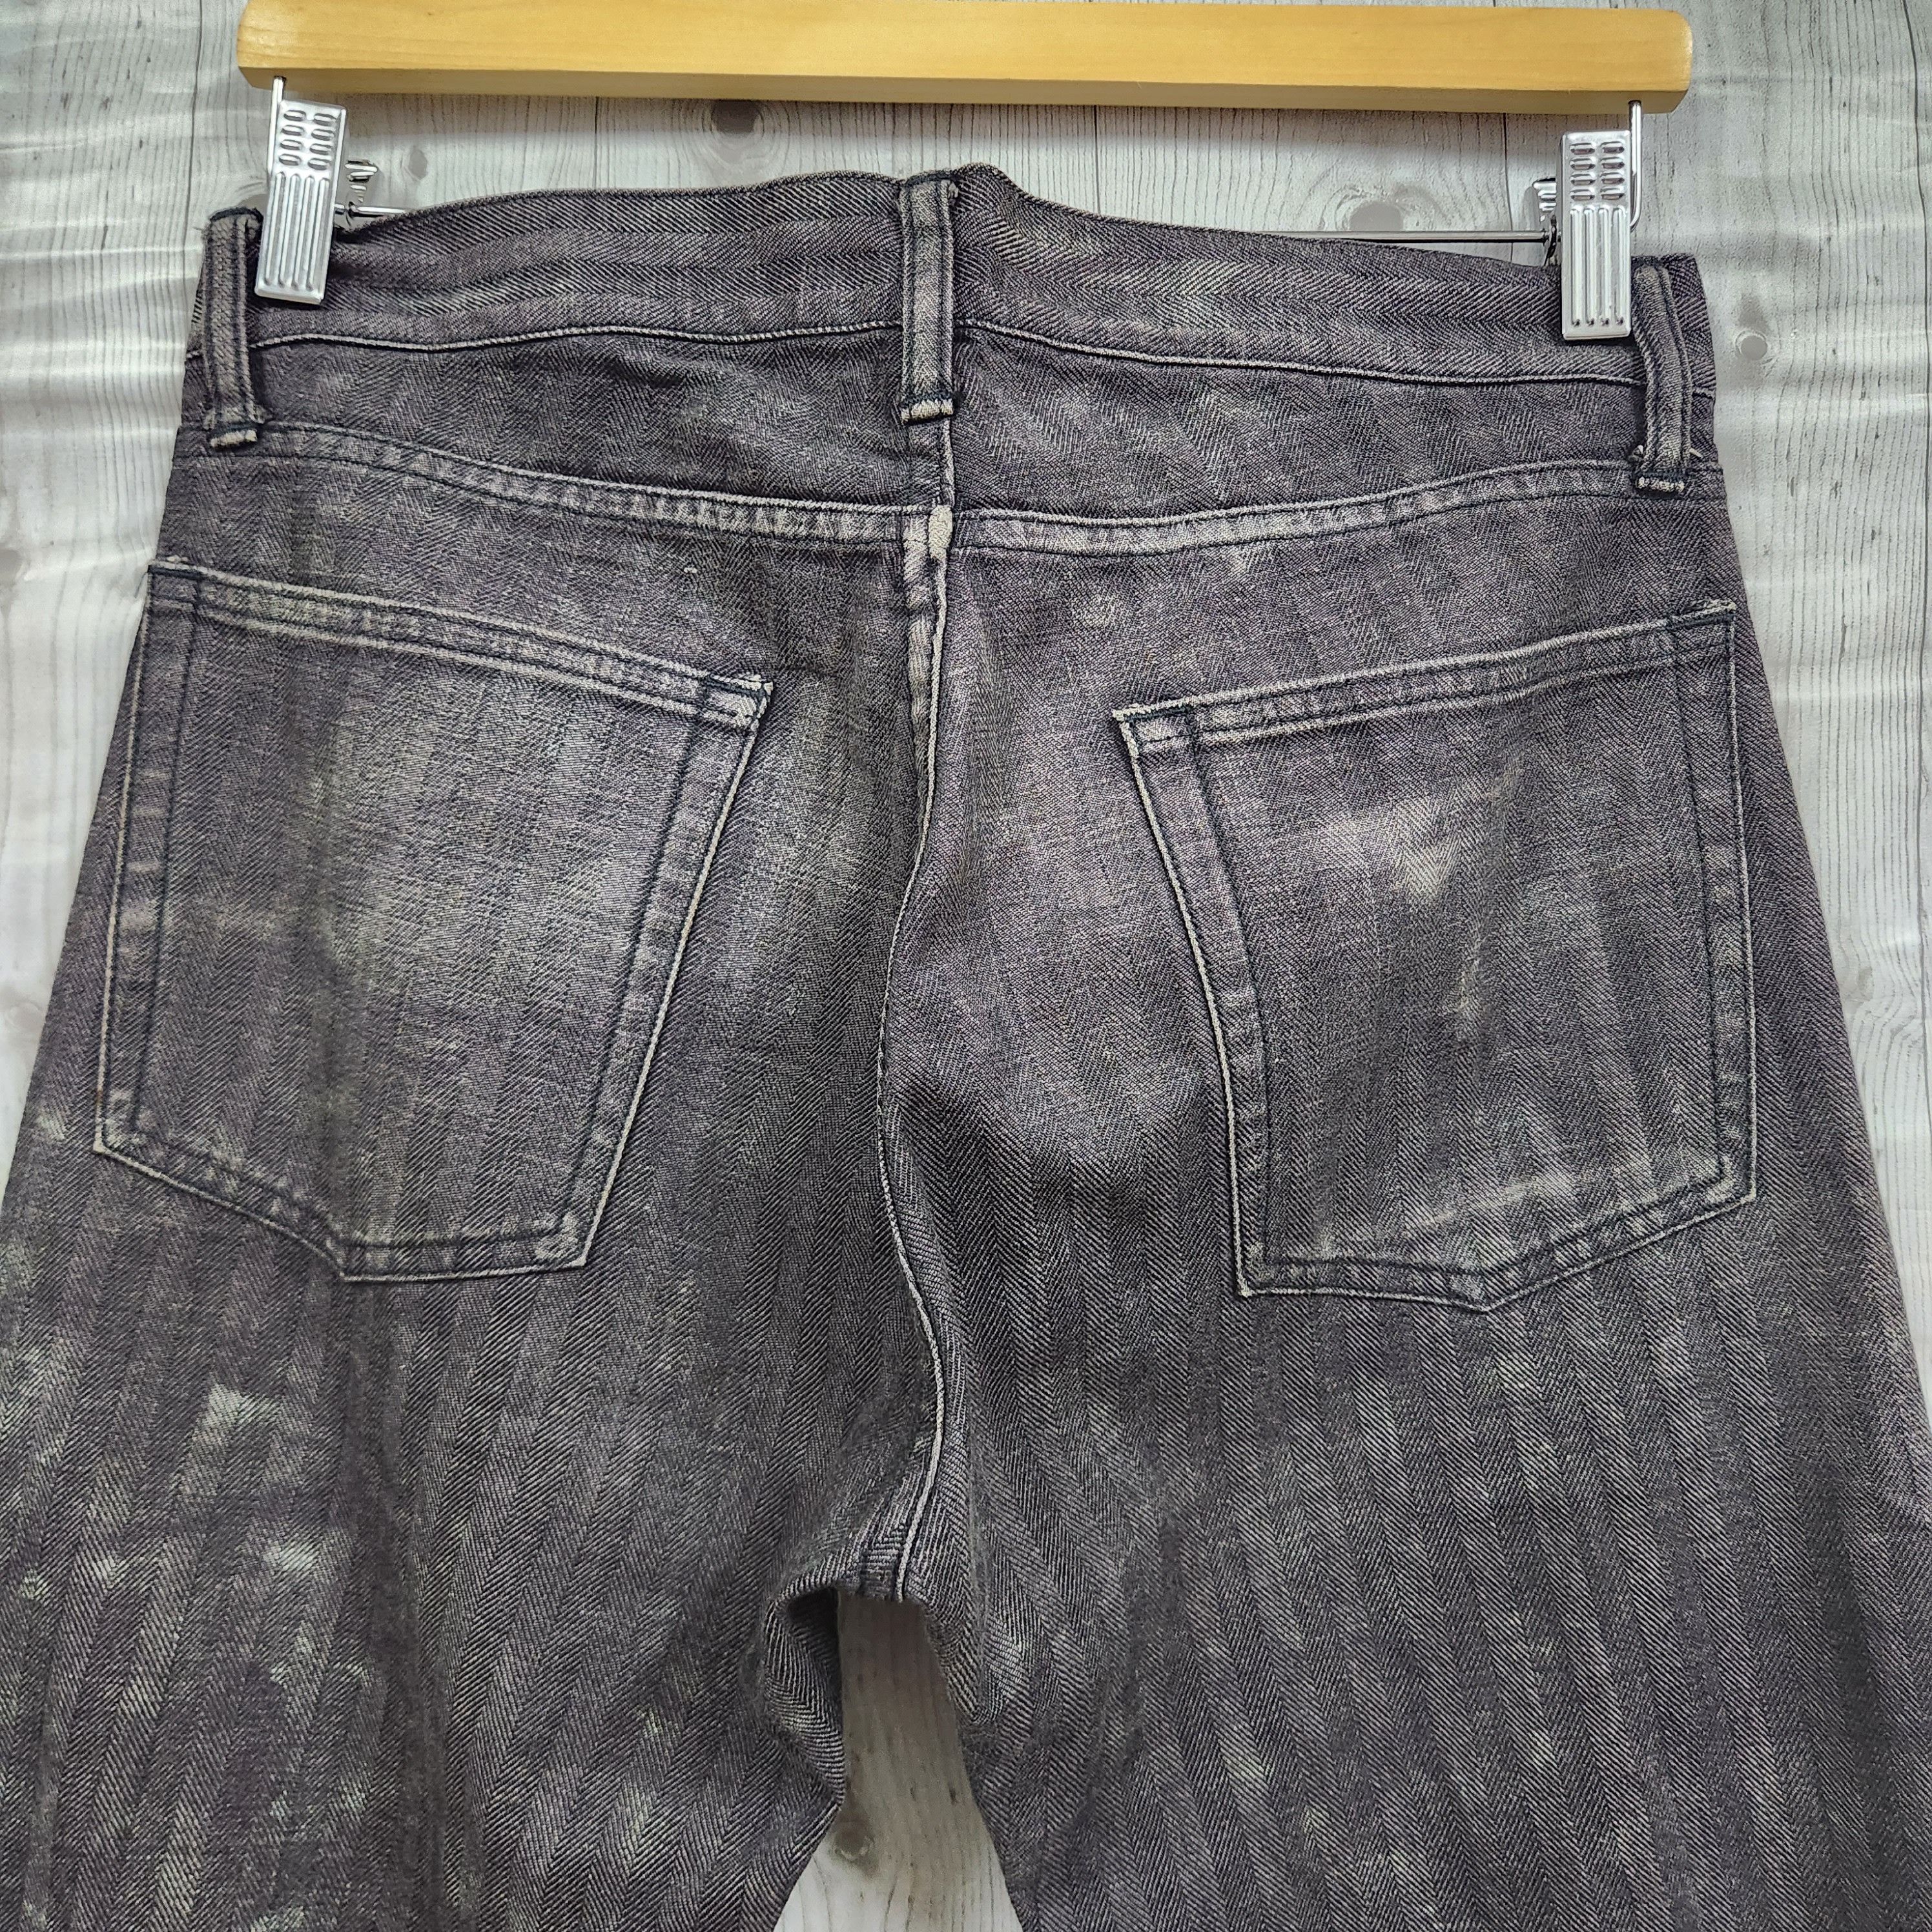 Japanese Brand - Flared Edge Rupert Denim Japan Jeans 70s Style - 10